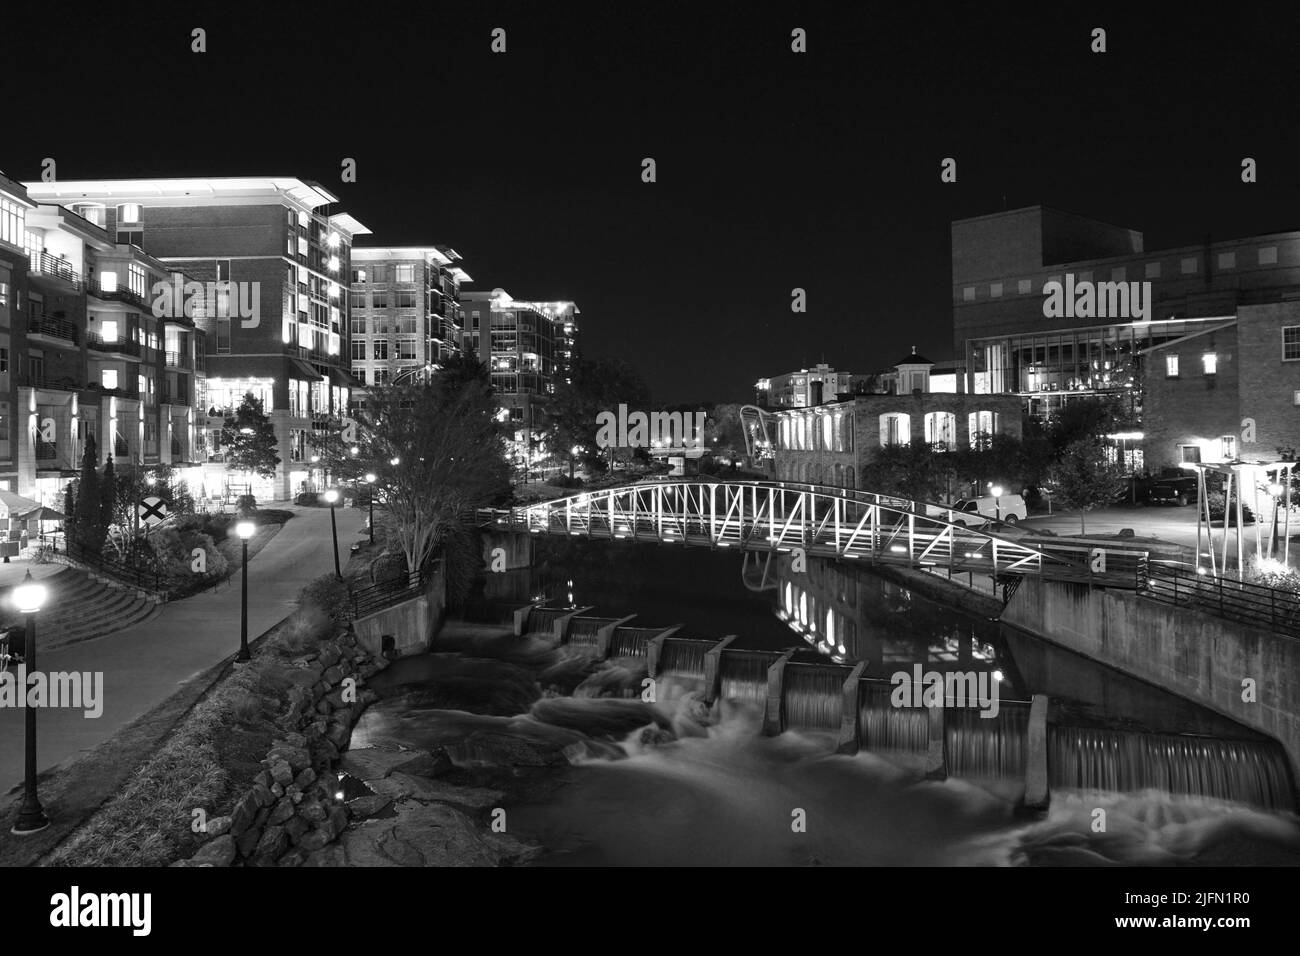 Eine Nacht Blick auf den Reedy River in der Innenstadt von Greenville, SC USA. Die Lichter der Gebäude und der Brücke spiegeln sich im Wasser des Flusses. Geschäfte und re Stockfoto